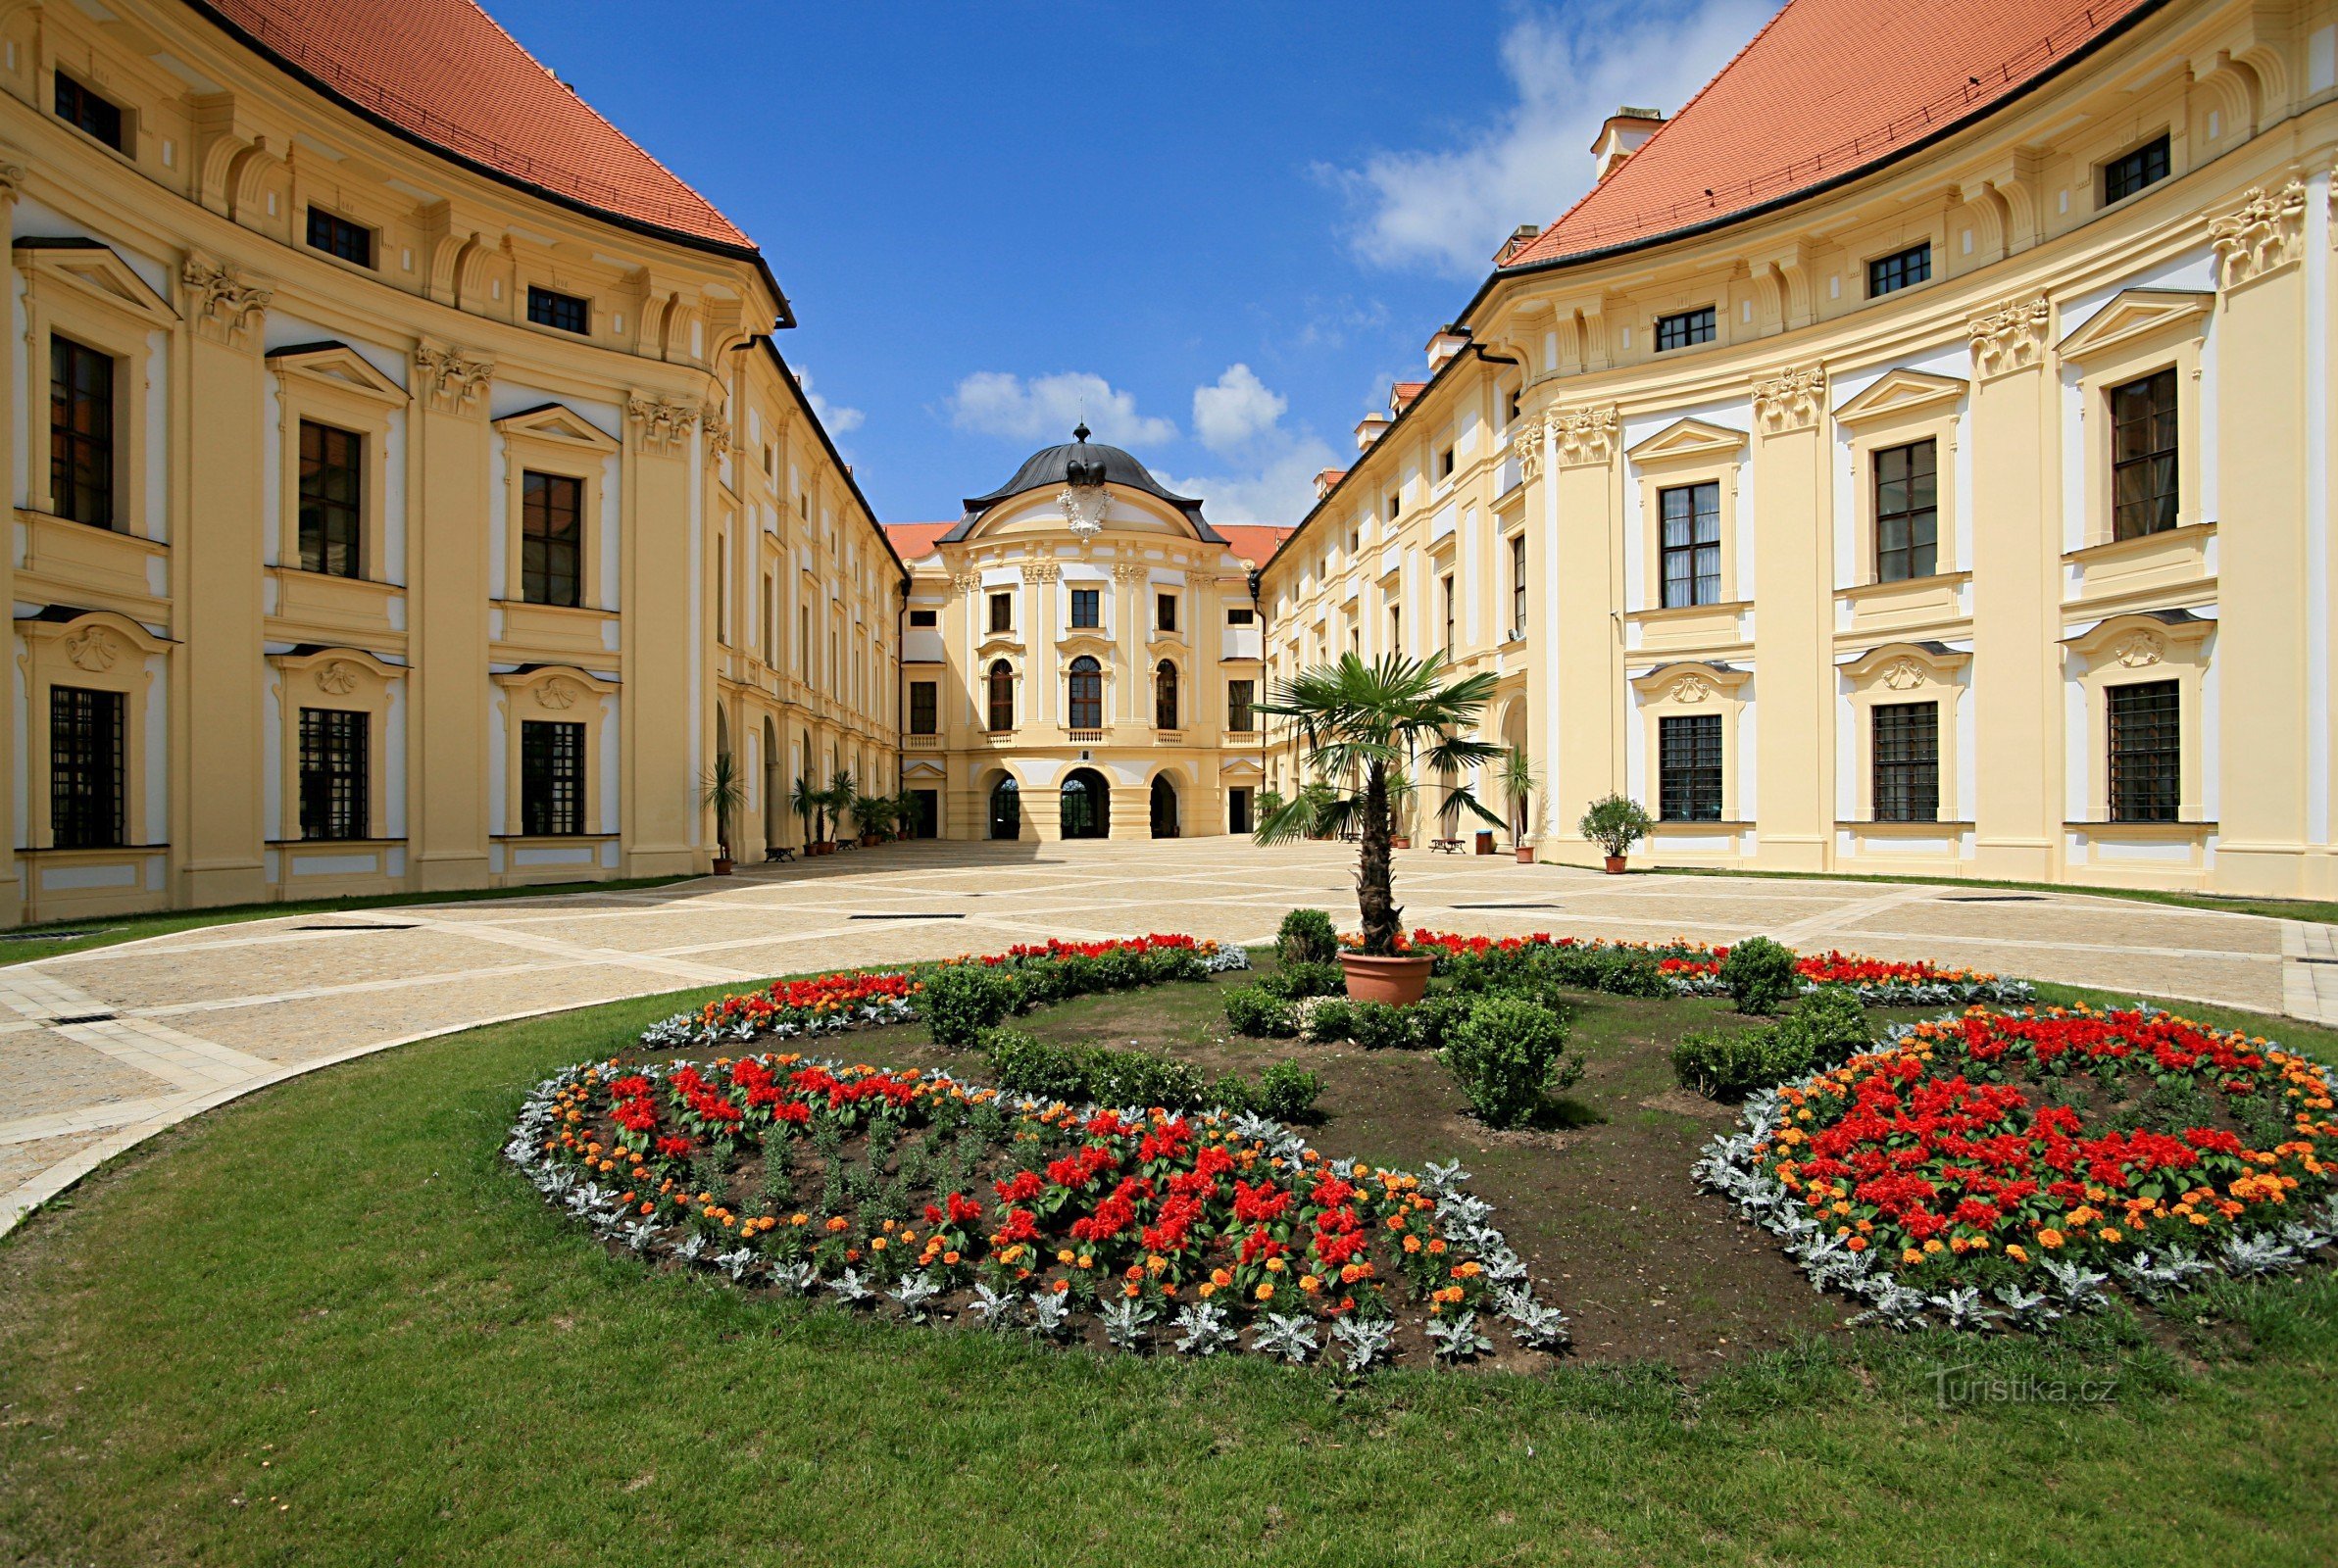 Slot Slavkov - Austerlitz